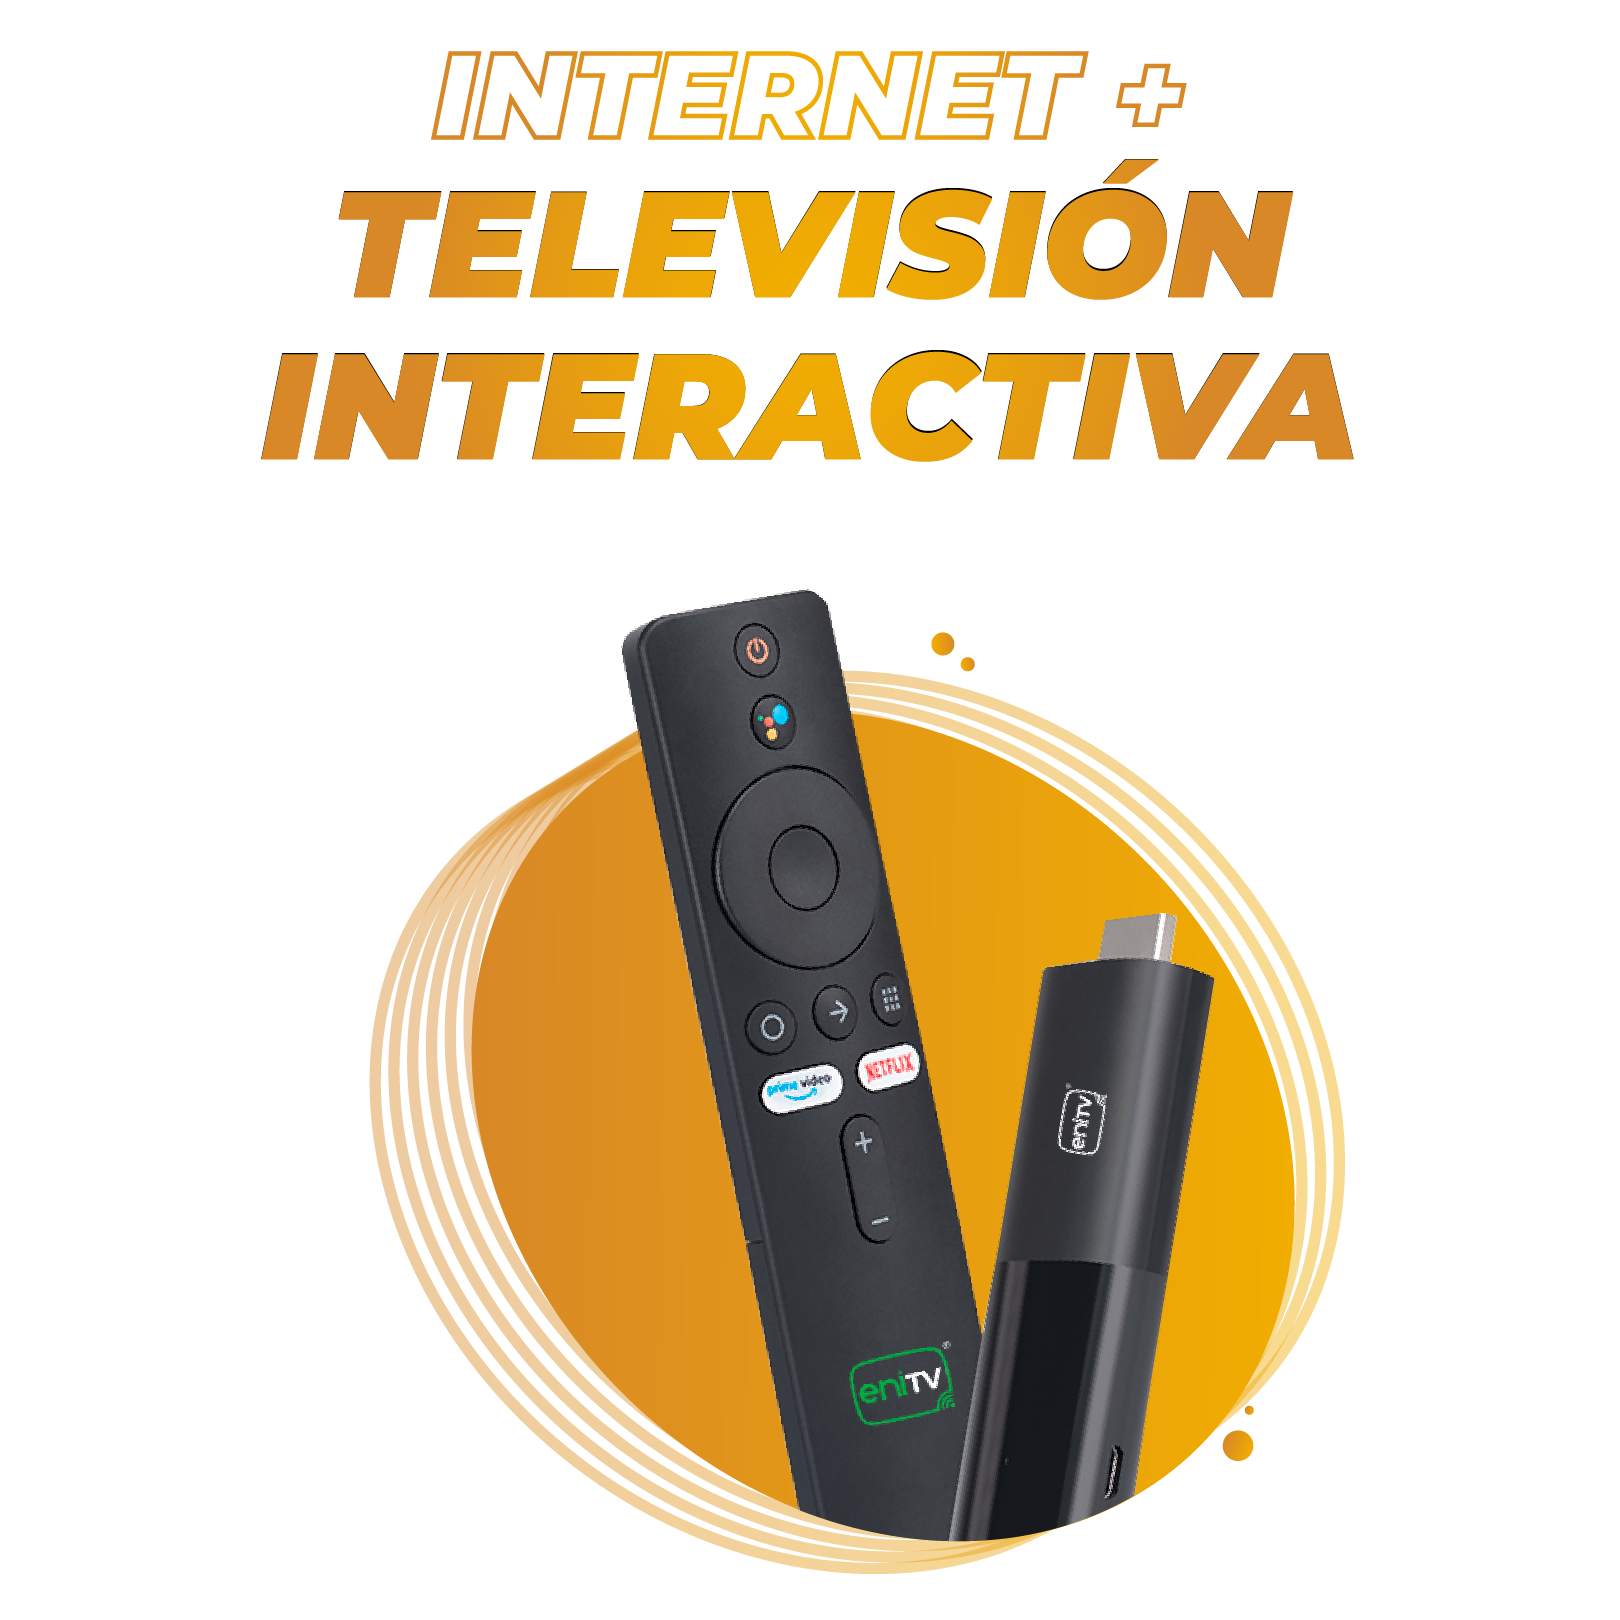 INTERNET PORTATIL NETWEY en Veracruz